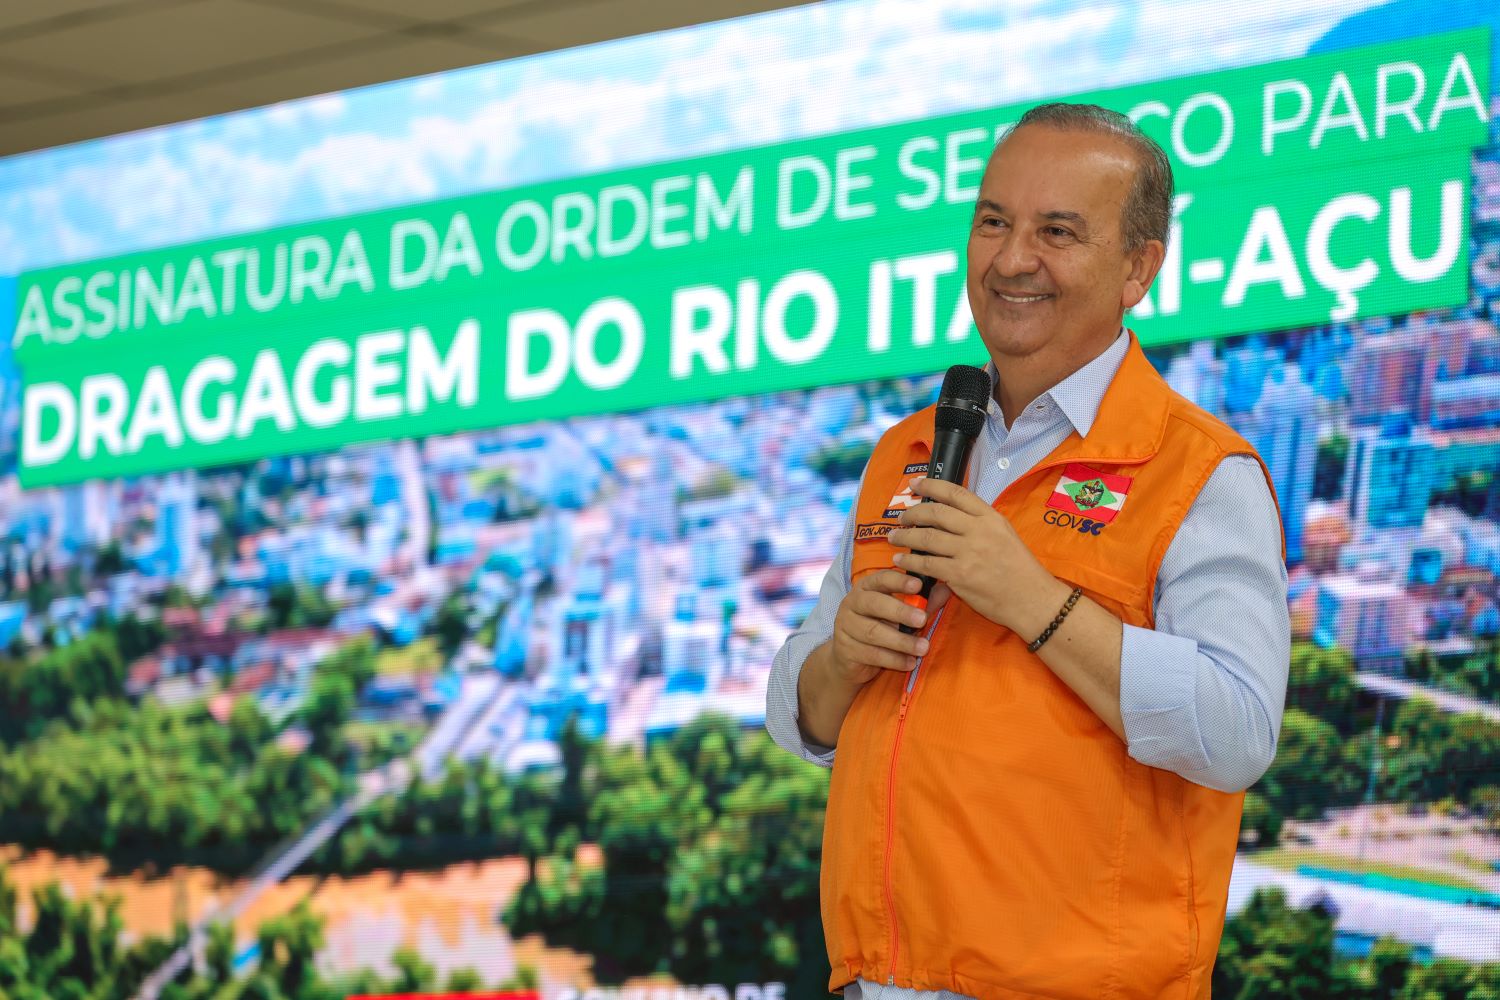 Proteção Levada a Sério: Governo de Santa Catarina investe R$ 16 milhões e inicia dragagem do Rio Itajaí-Açu em Rio do Sul